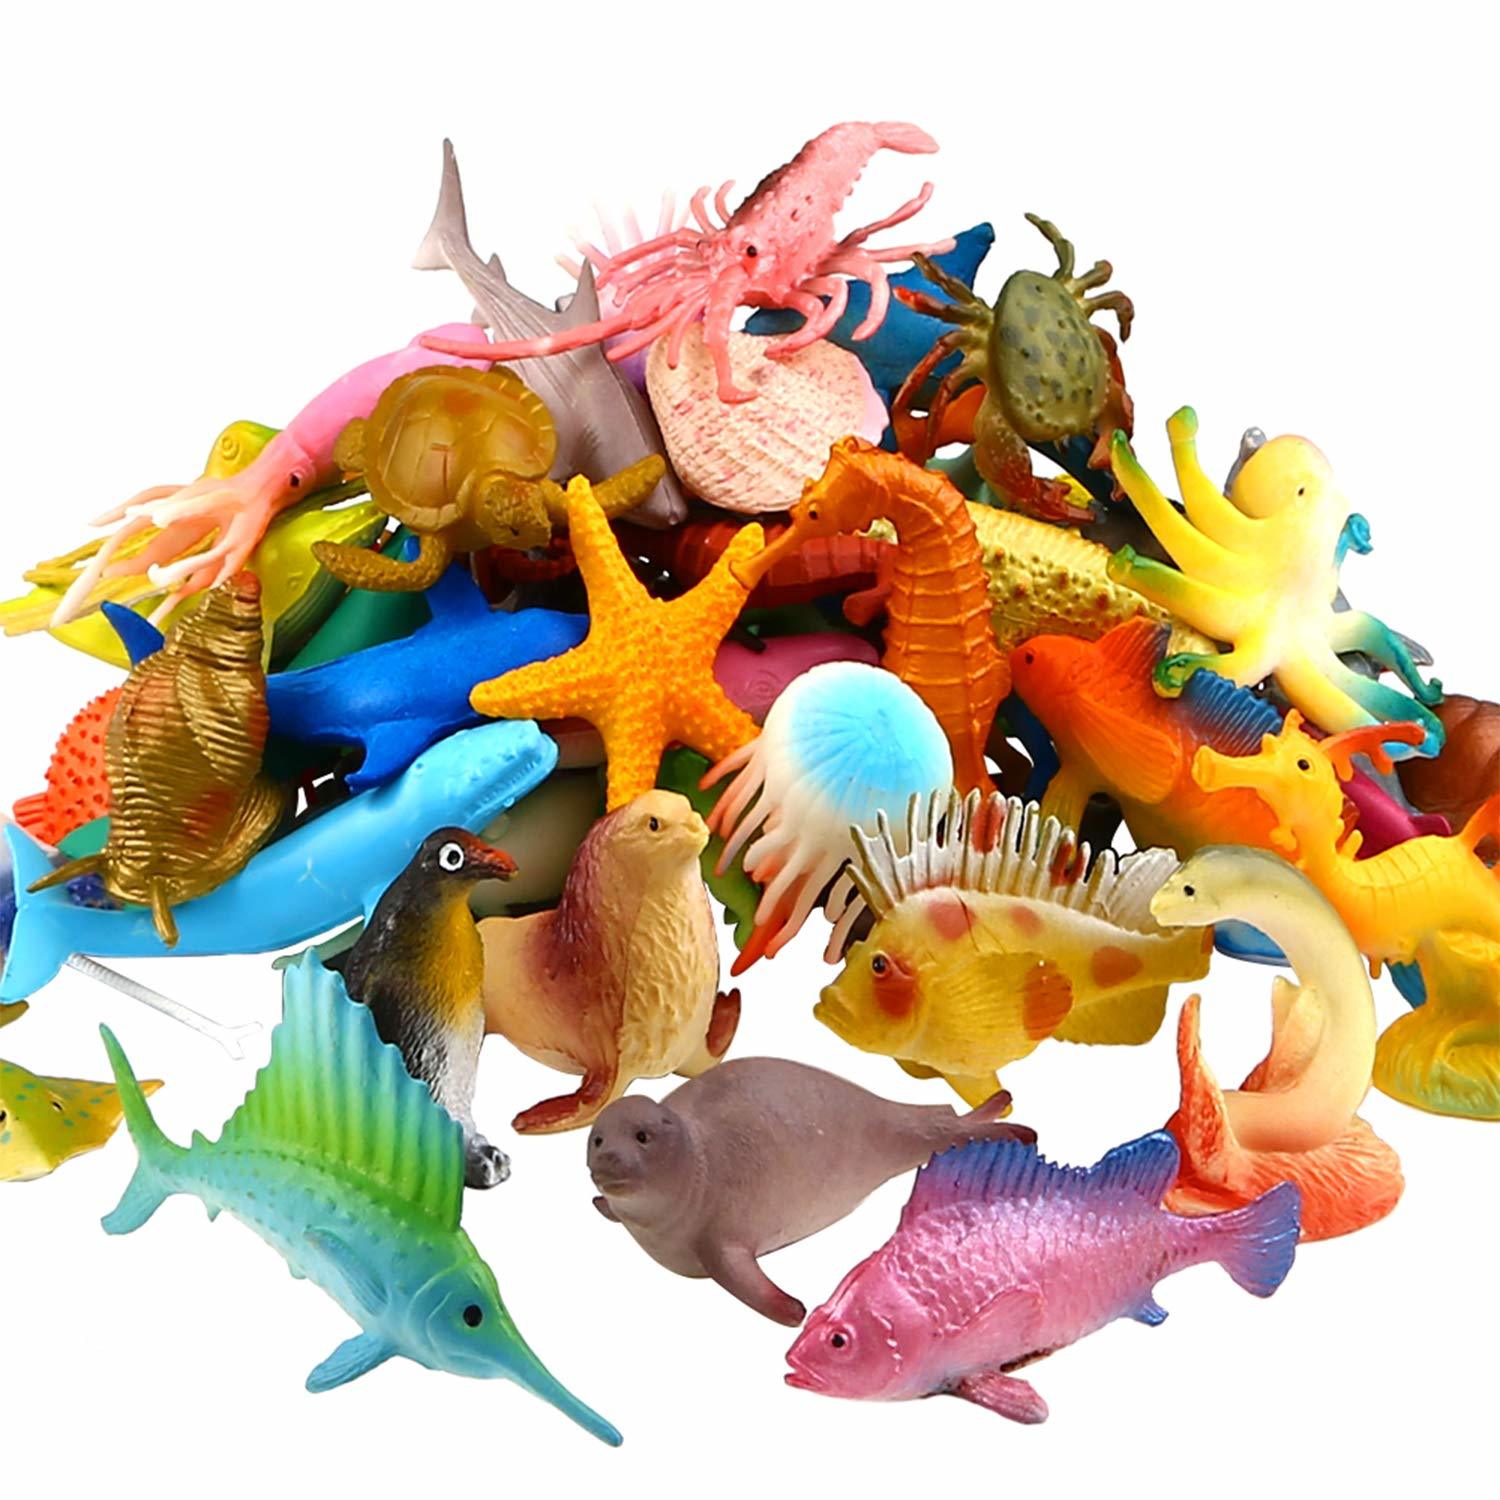 Sea Animal, 52 Pack Assorted Mini Vinyl Plastic Animal Toy Set, Realistic Under